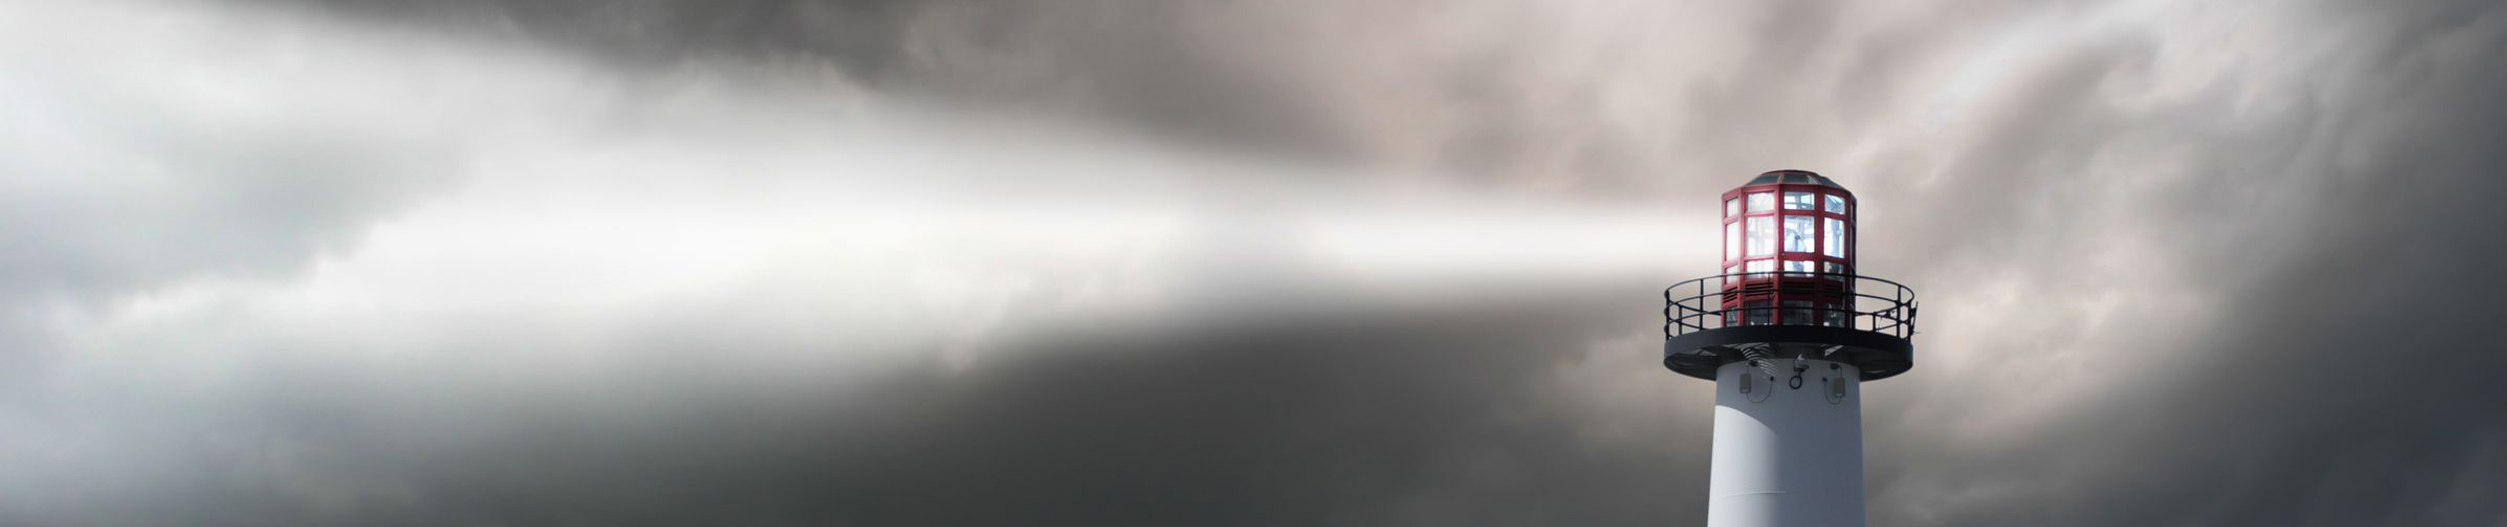 webagentur-mw-online-marketing - das Bild zeigt das Leuchtfeuer eines Leuchtturms vor einem wolkigen Sturmhimmel